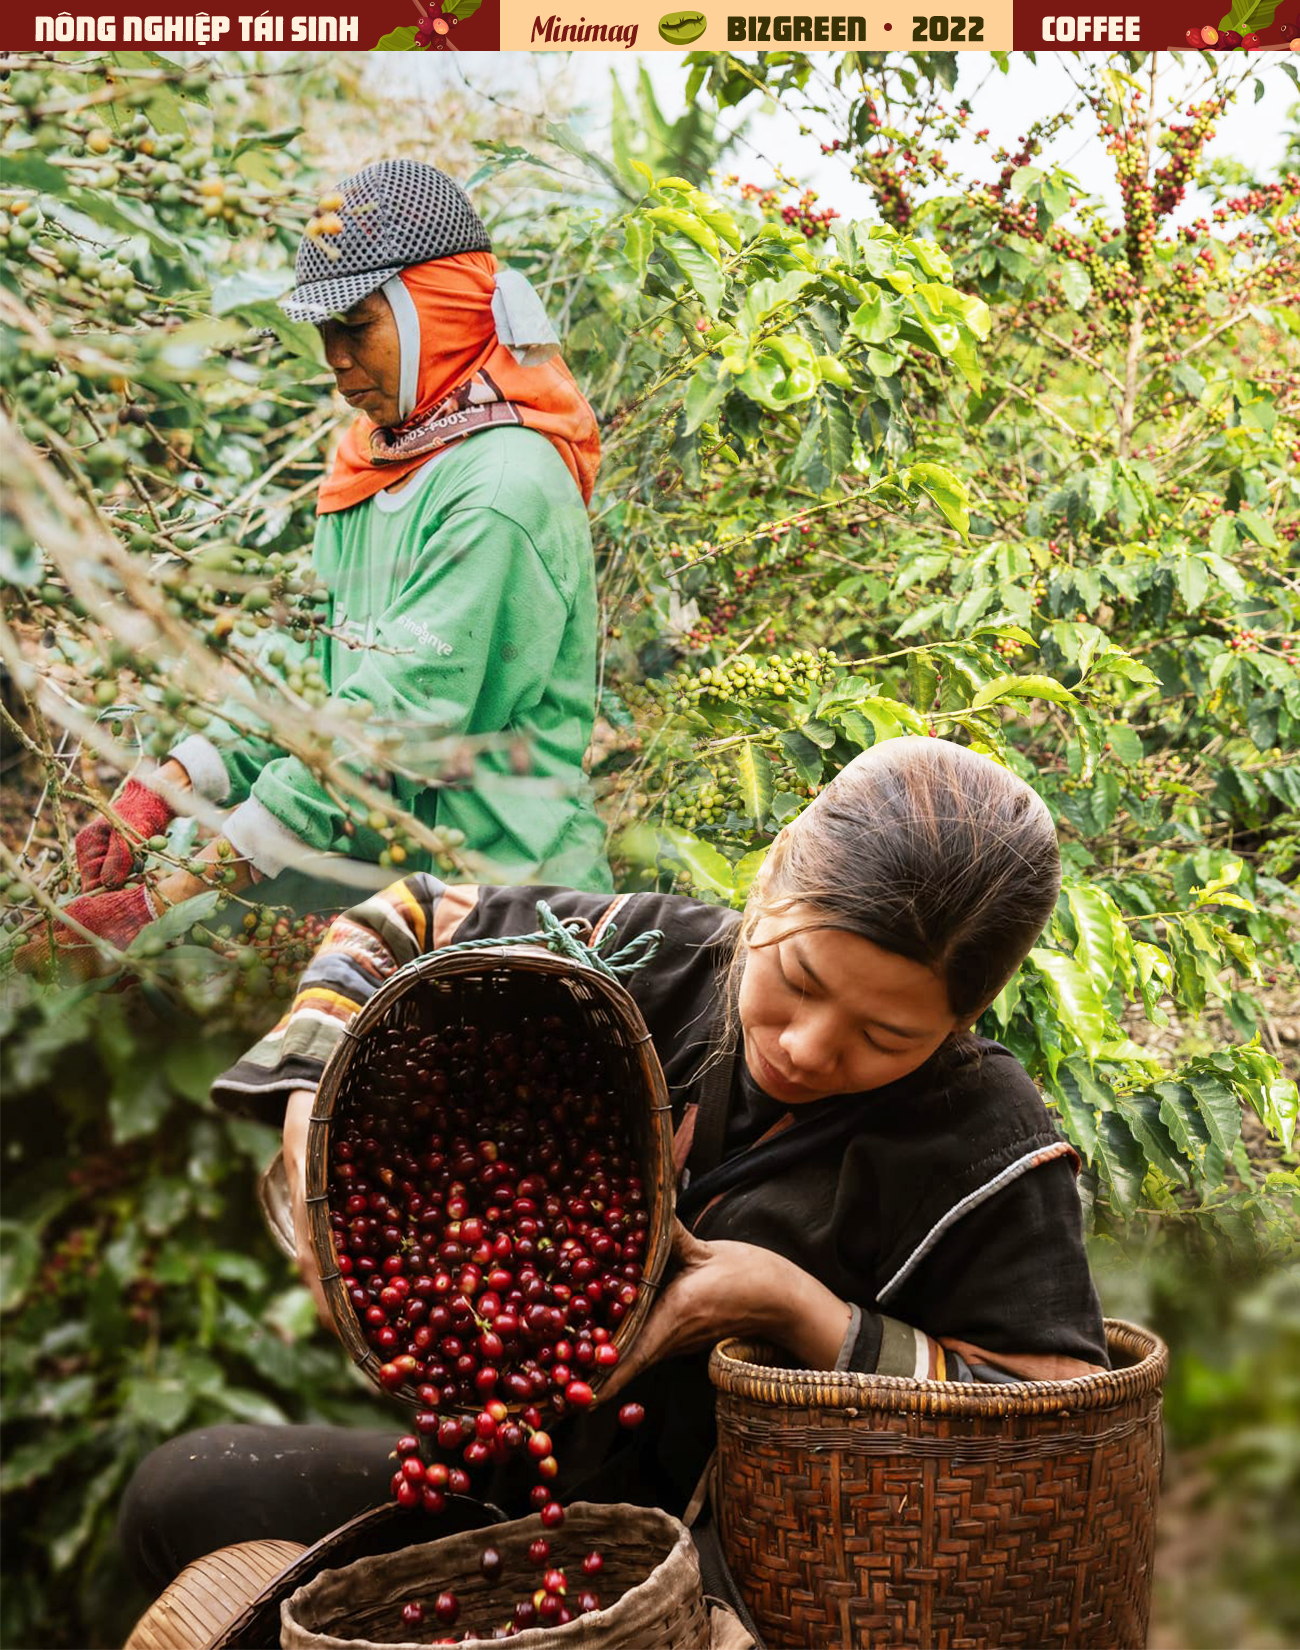 Trồng cà phê: Sự bền bỉ và cẩn trọng là hai yếu tố quan trọng để trồng cà phê thành công. Xem hình ảnh để khám phá vẻ đẹp của những cây cà phê mọc vươn cao và quyến rũ trên đồi núi.